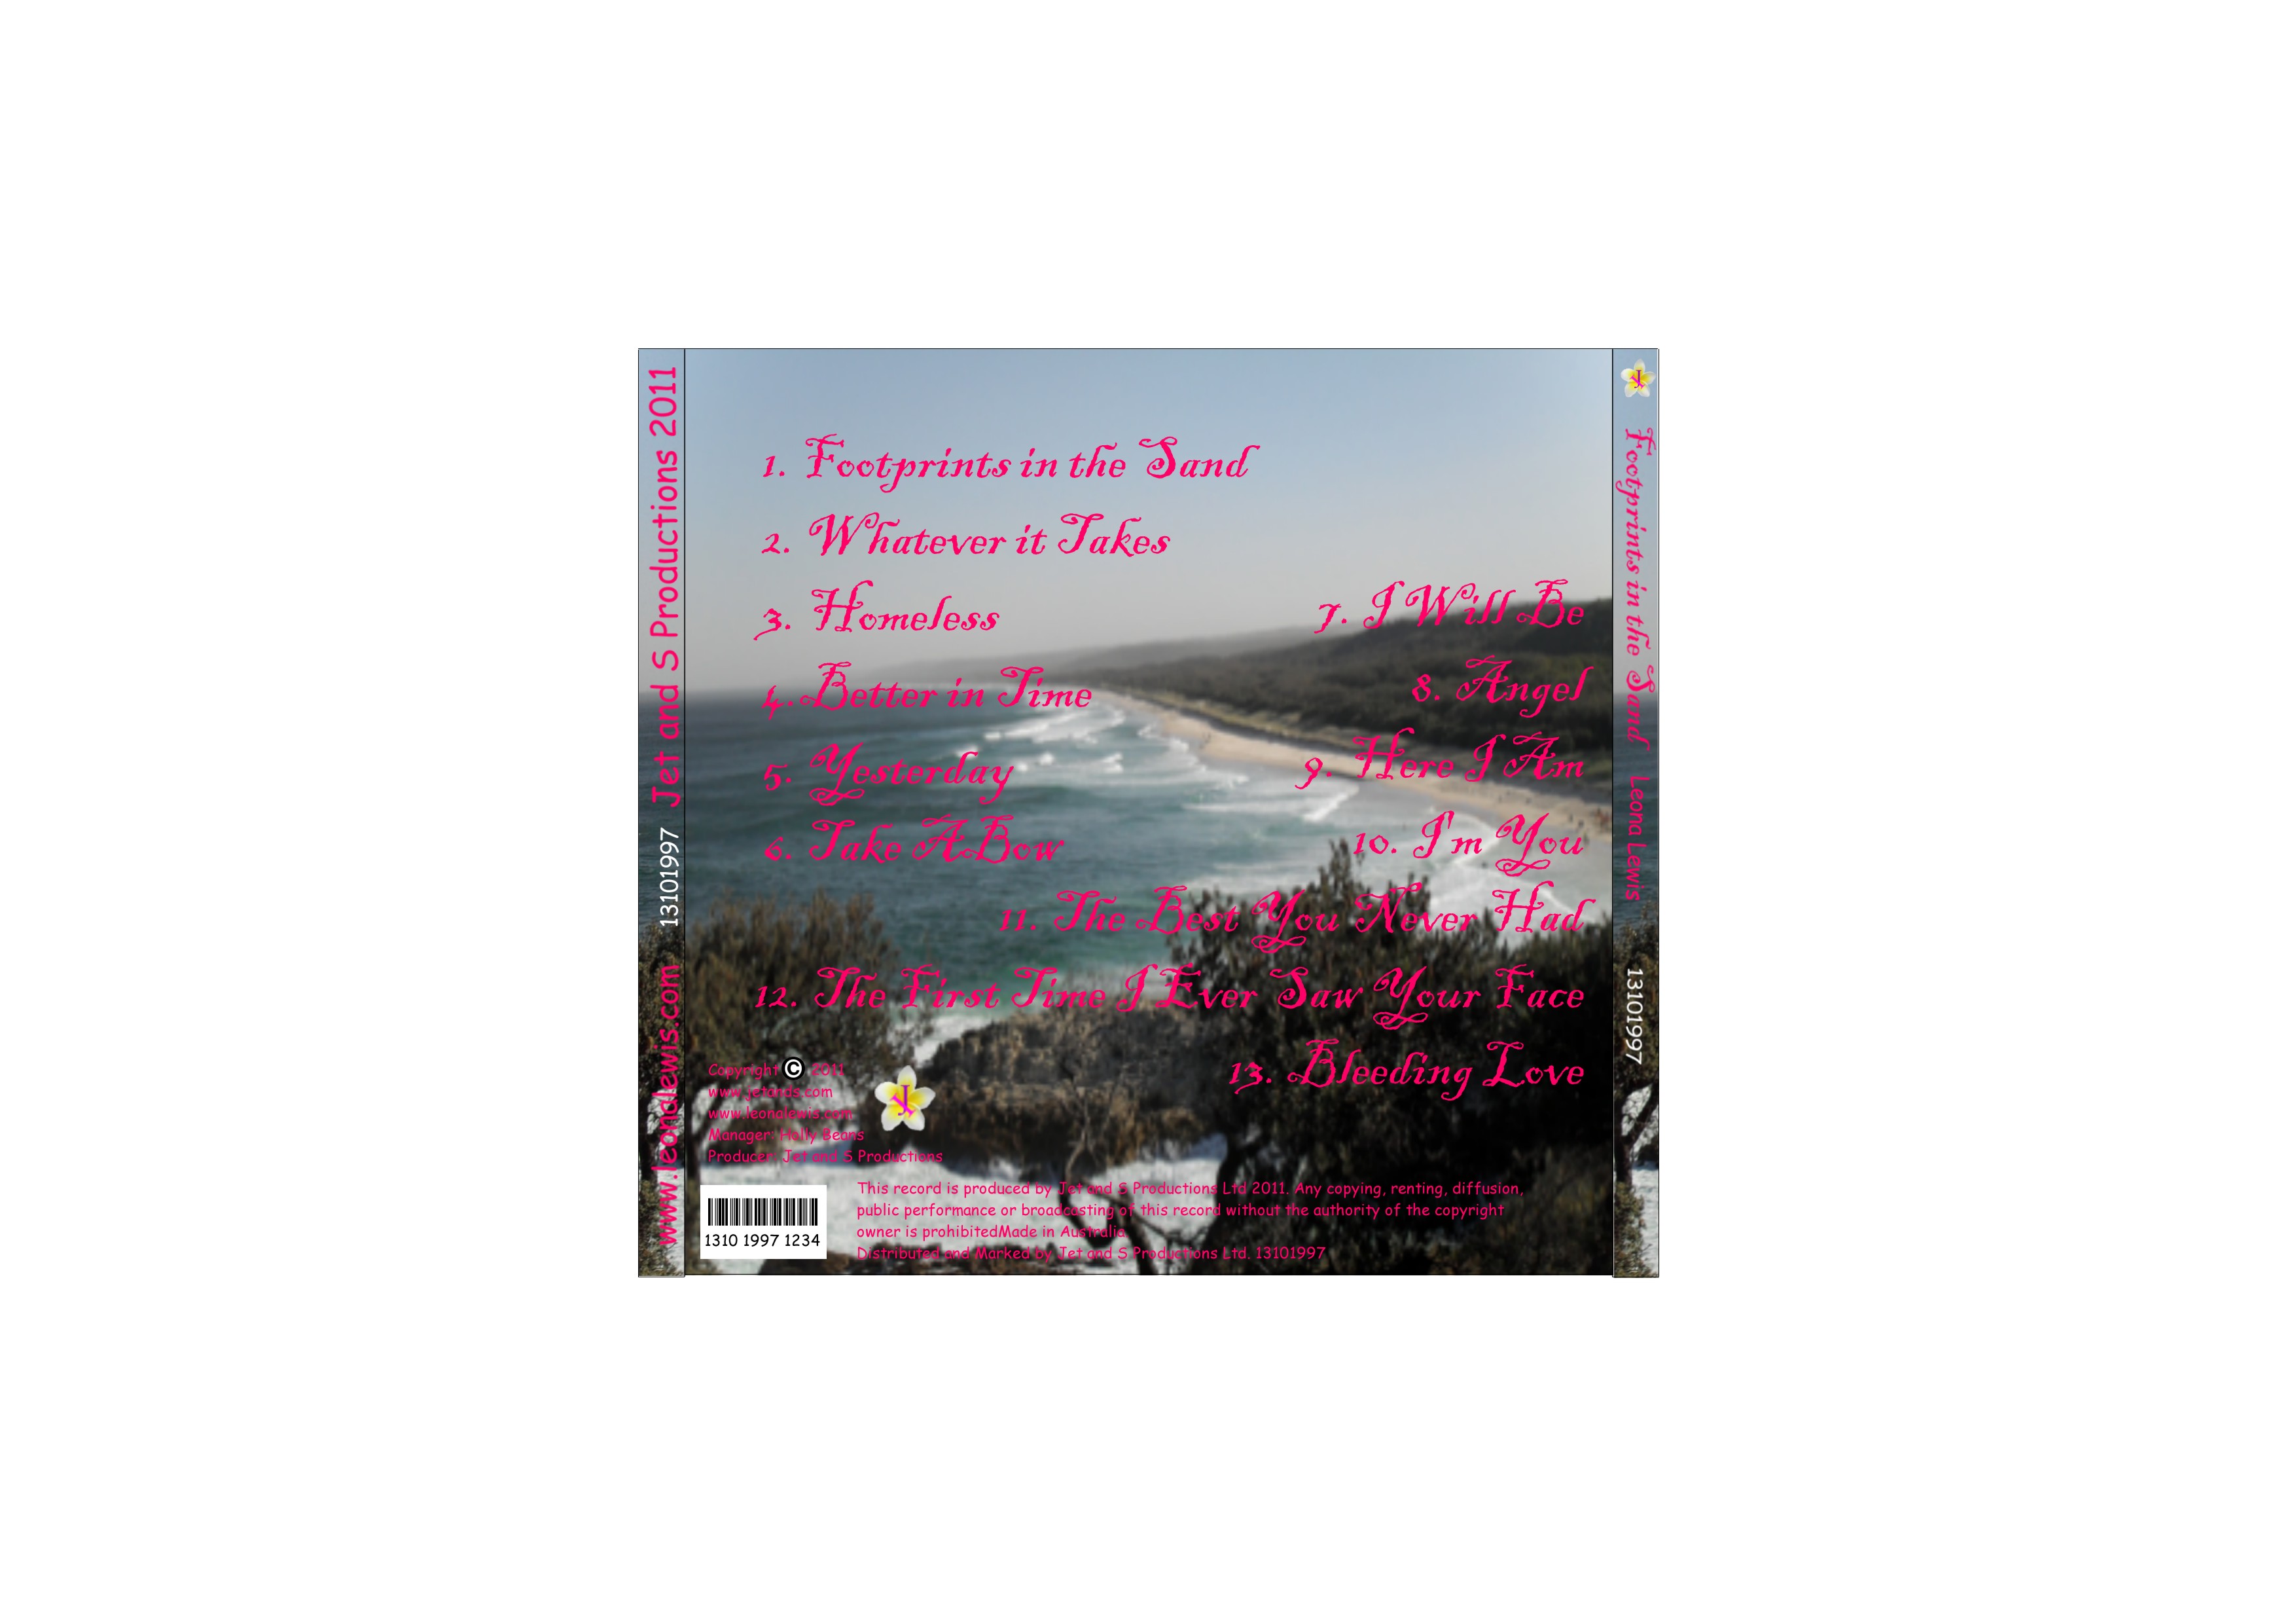 CD- Leona Lewis